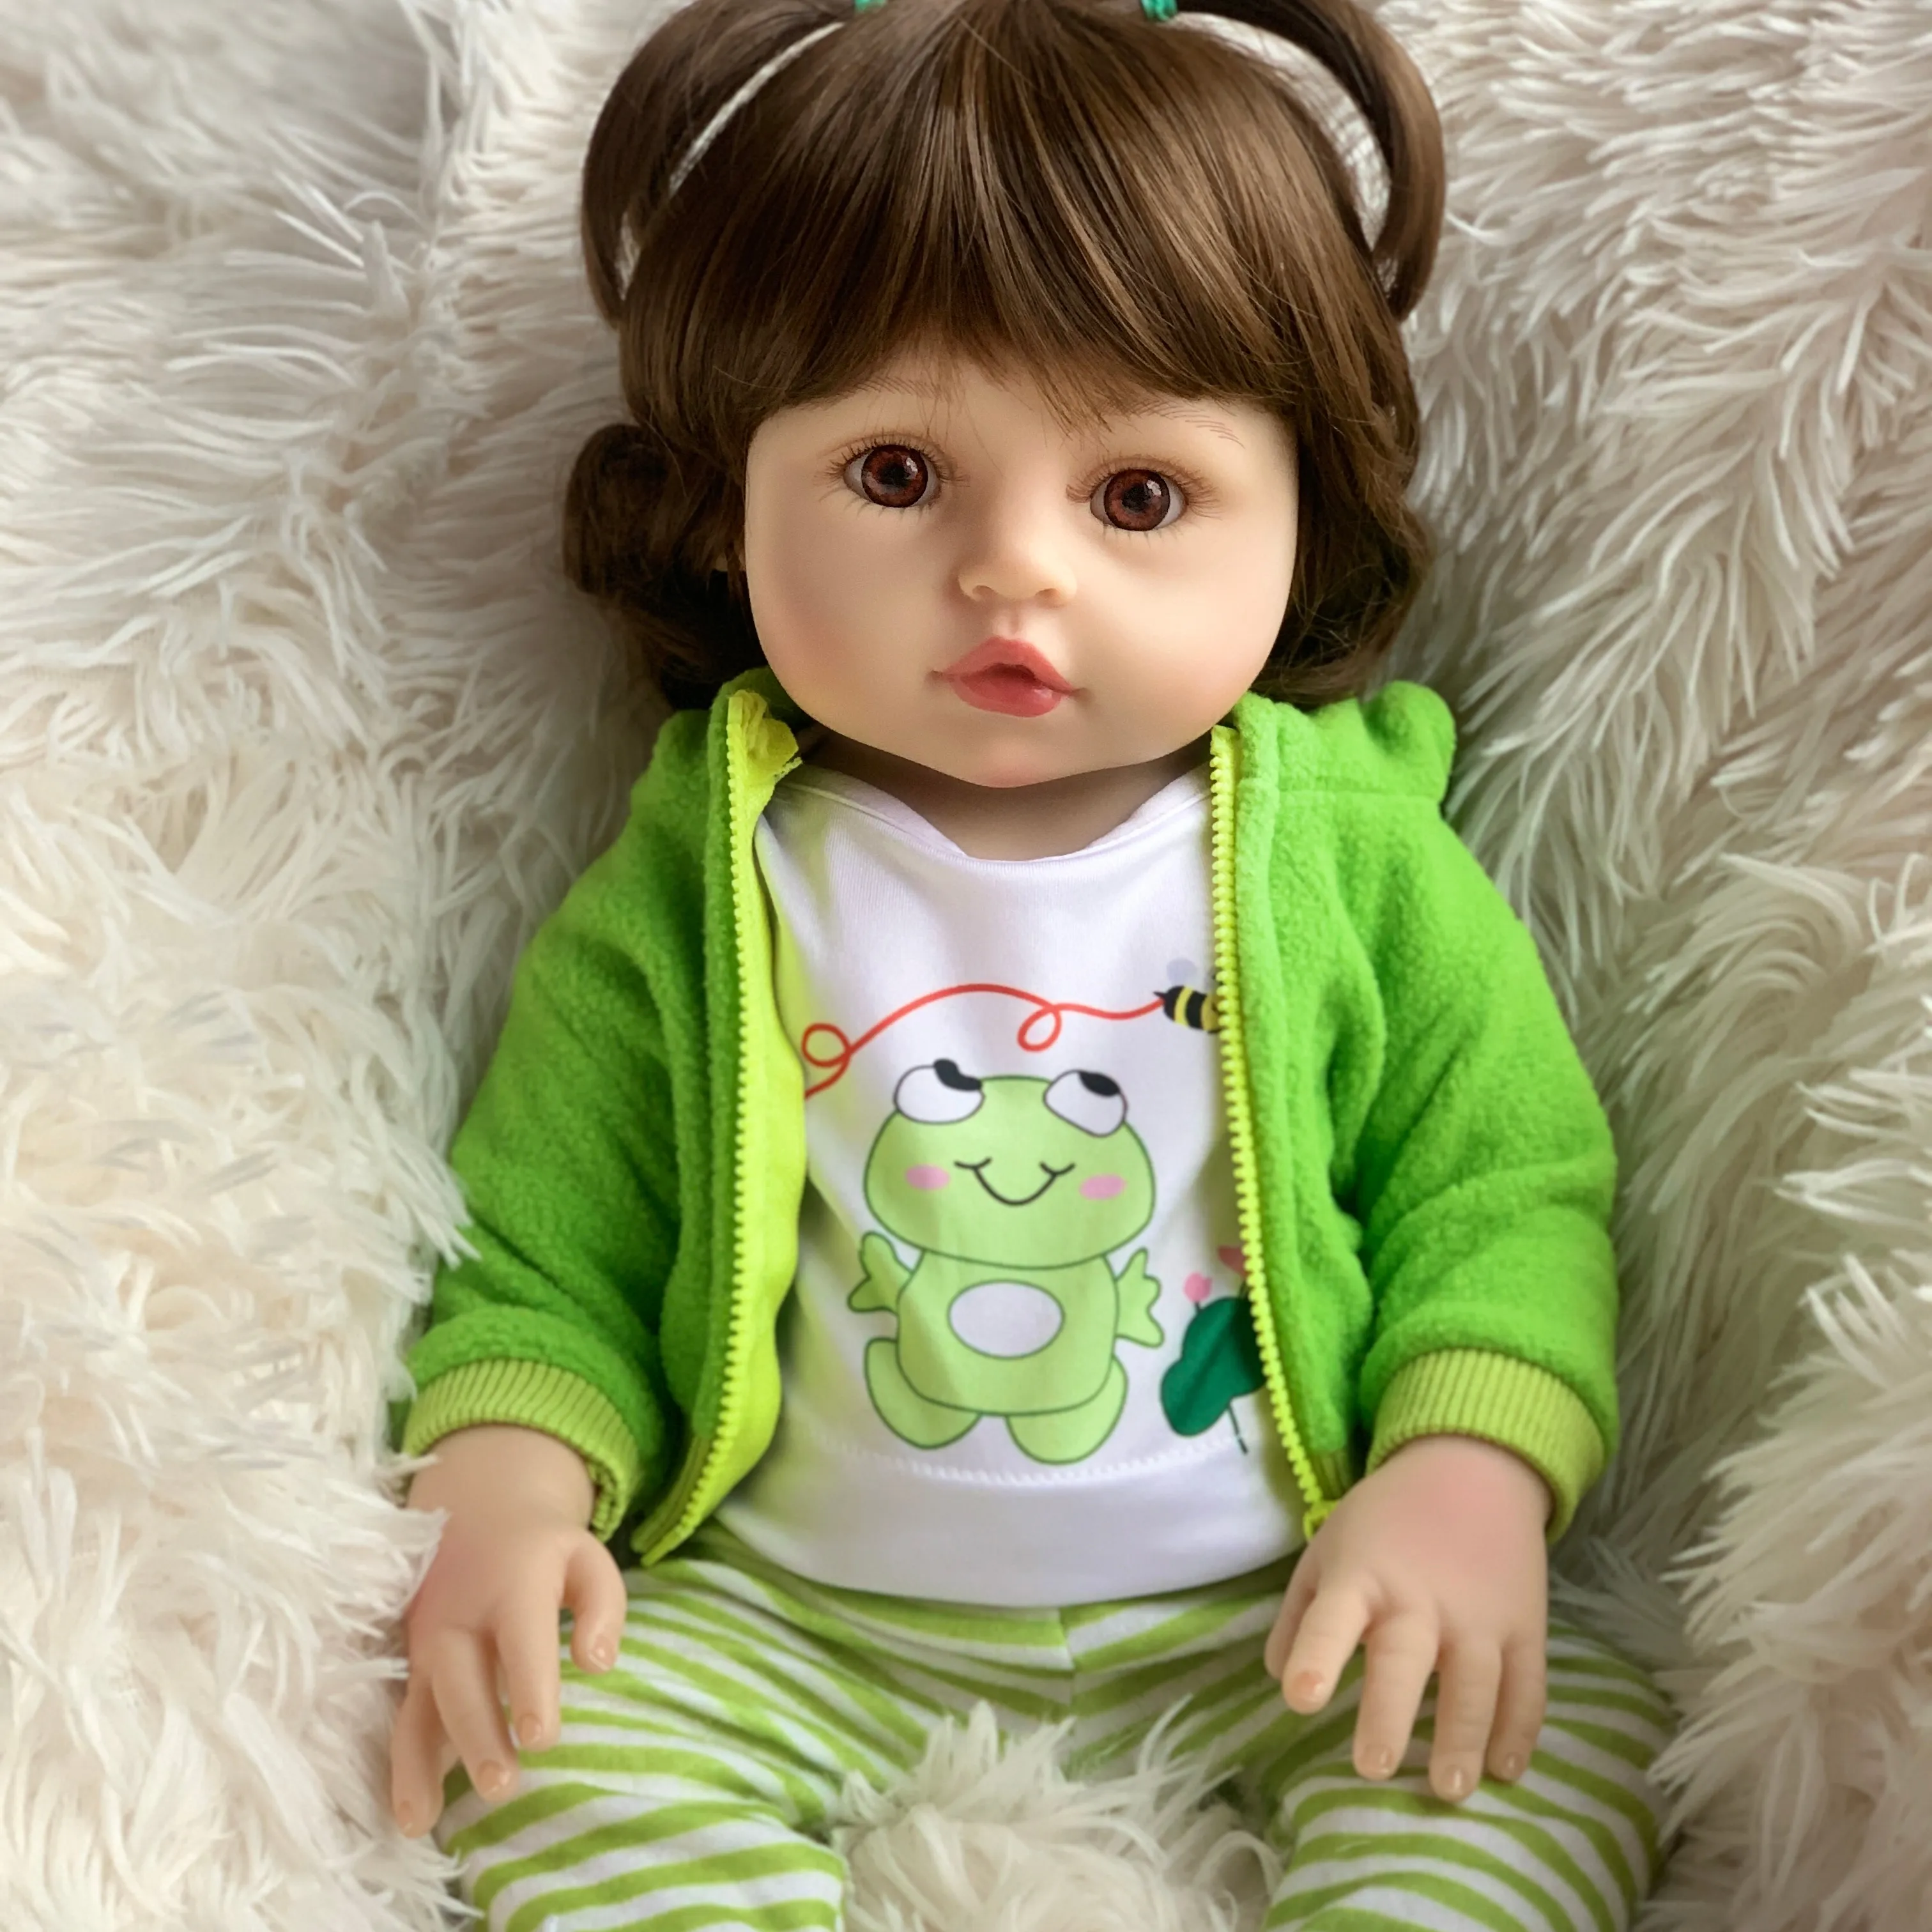 R & B all'ingrosso pollici a buon mercato Em realistico Mini neonato modello realistico giocattolo Loli ragazze vestiti e Silicone bambole rinate